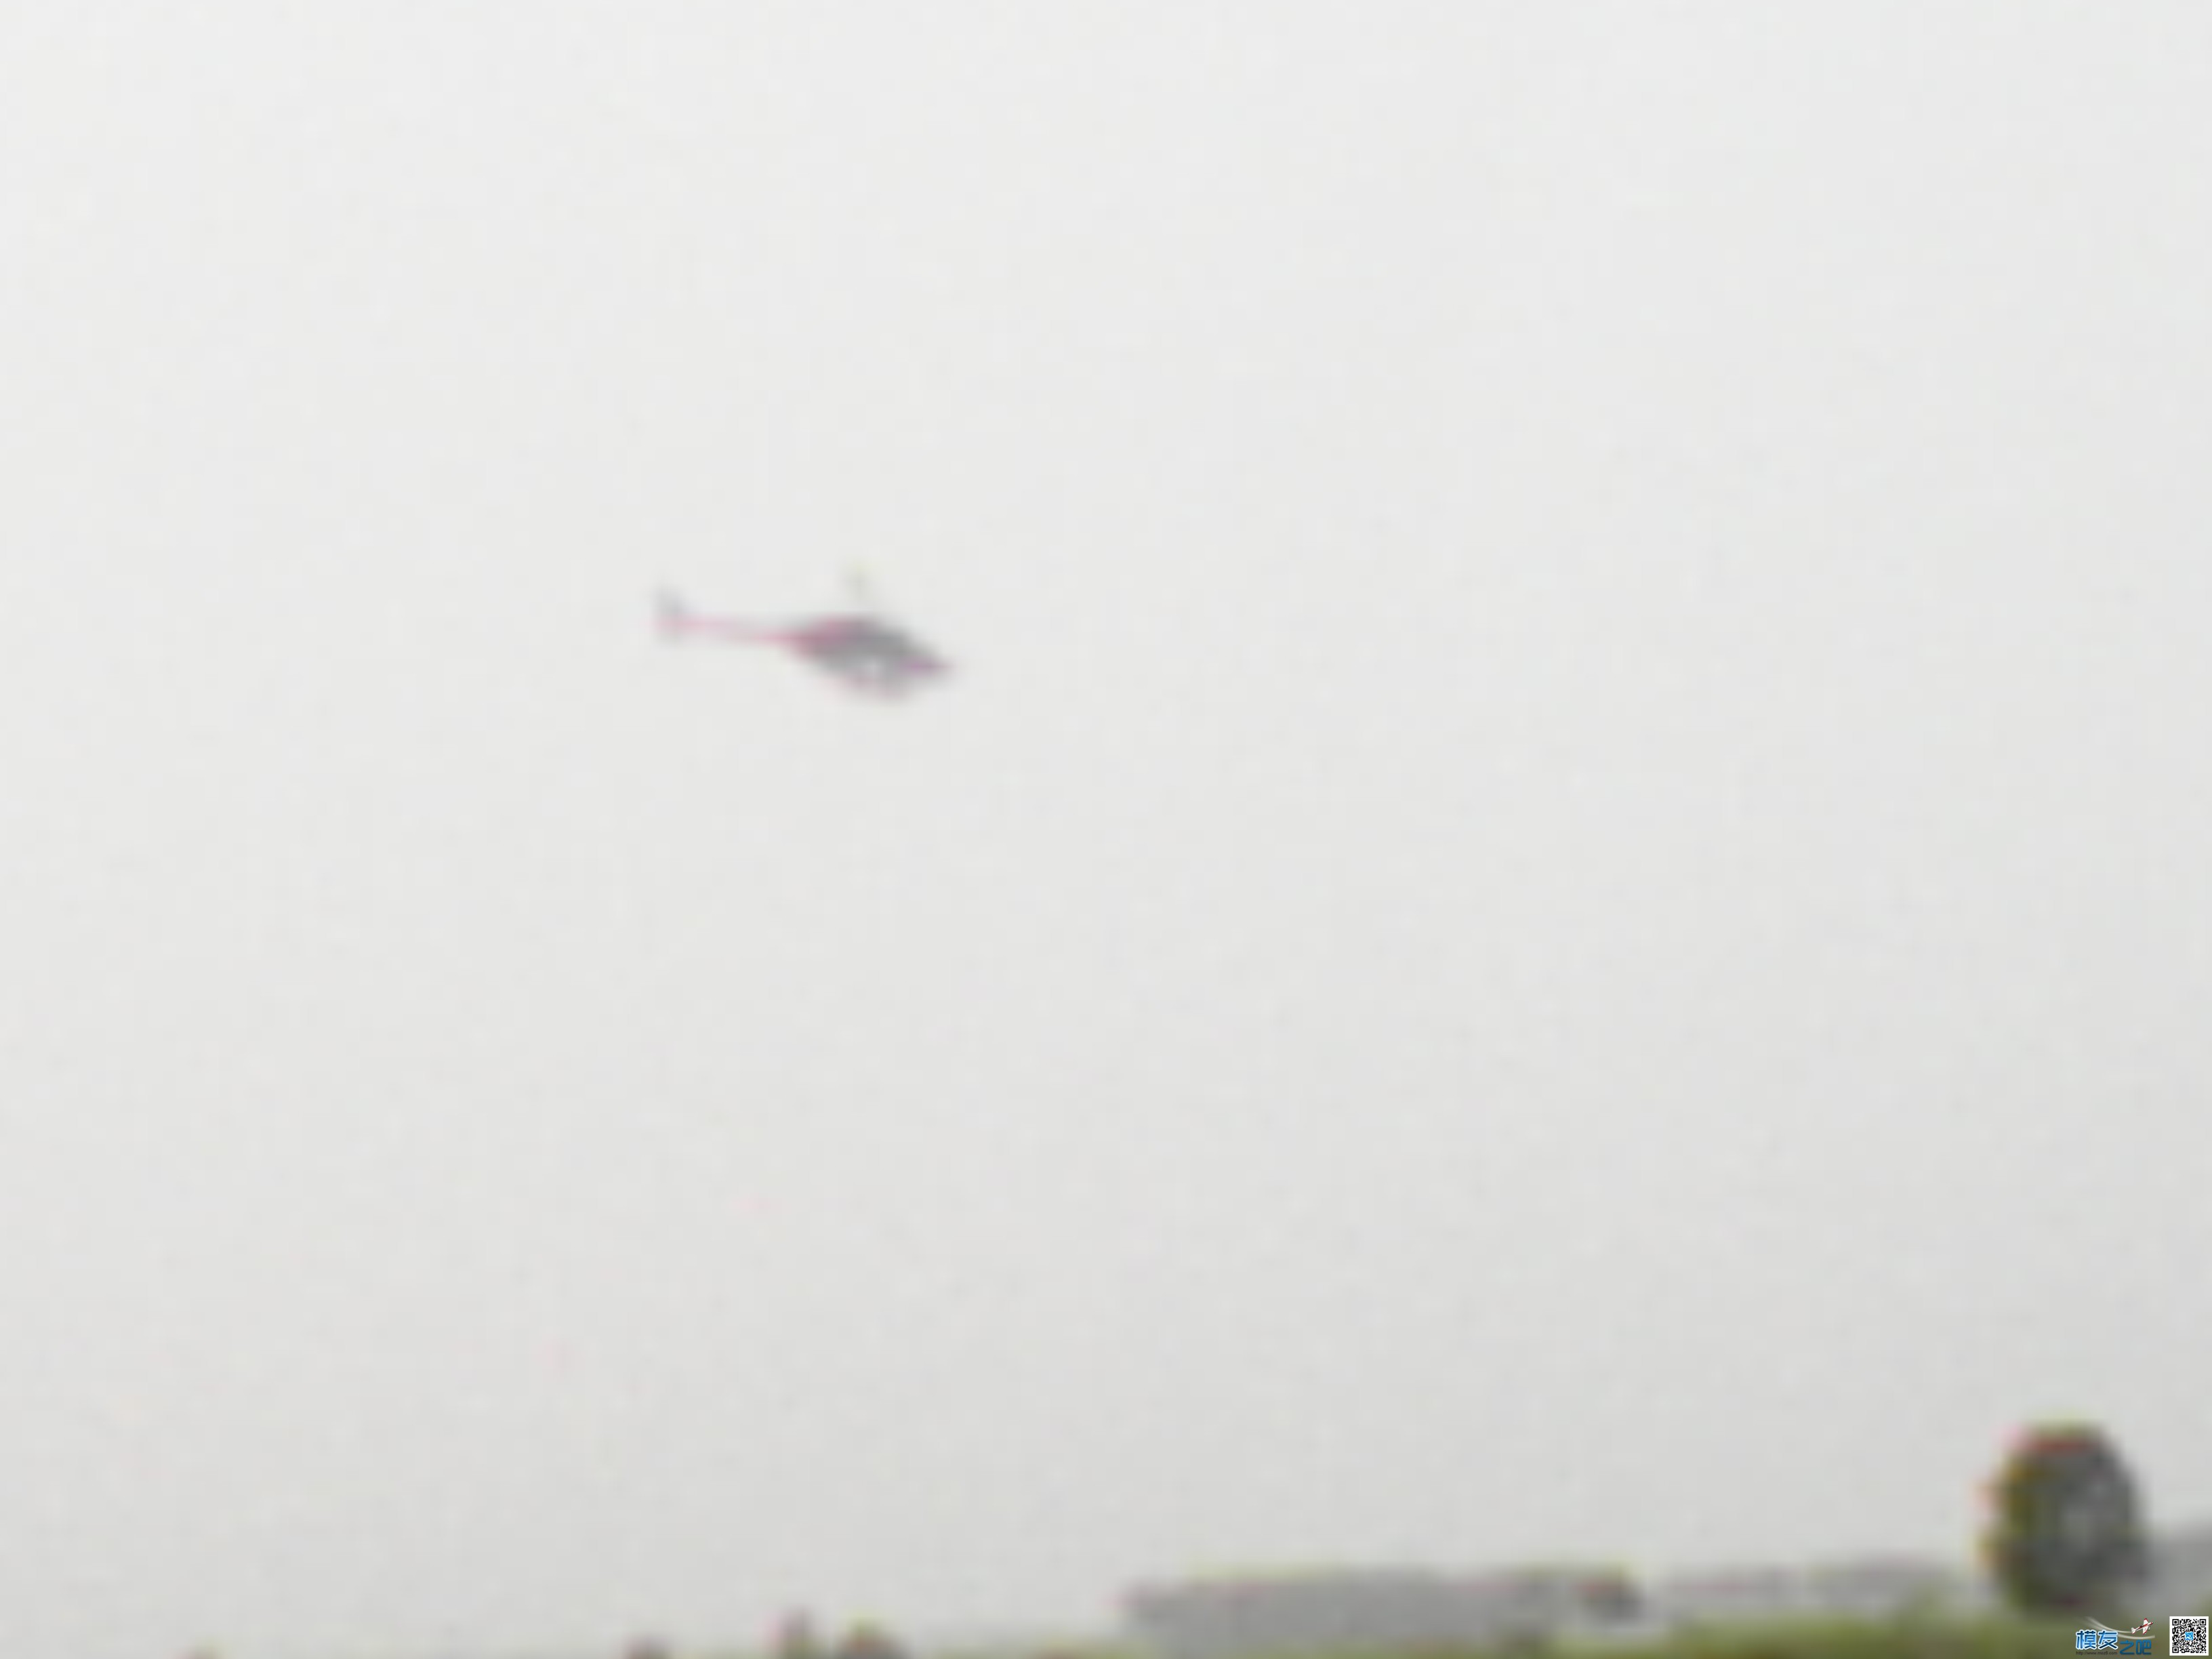 打药的小直升机 直升机,看见了,24k,不清晰,螺旋桨 作者:24k纯帅 5036 